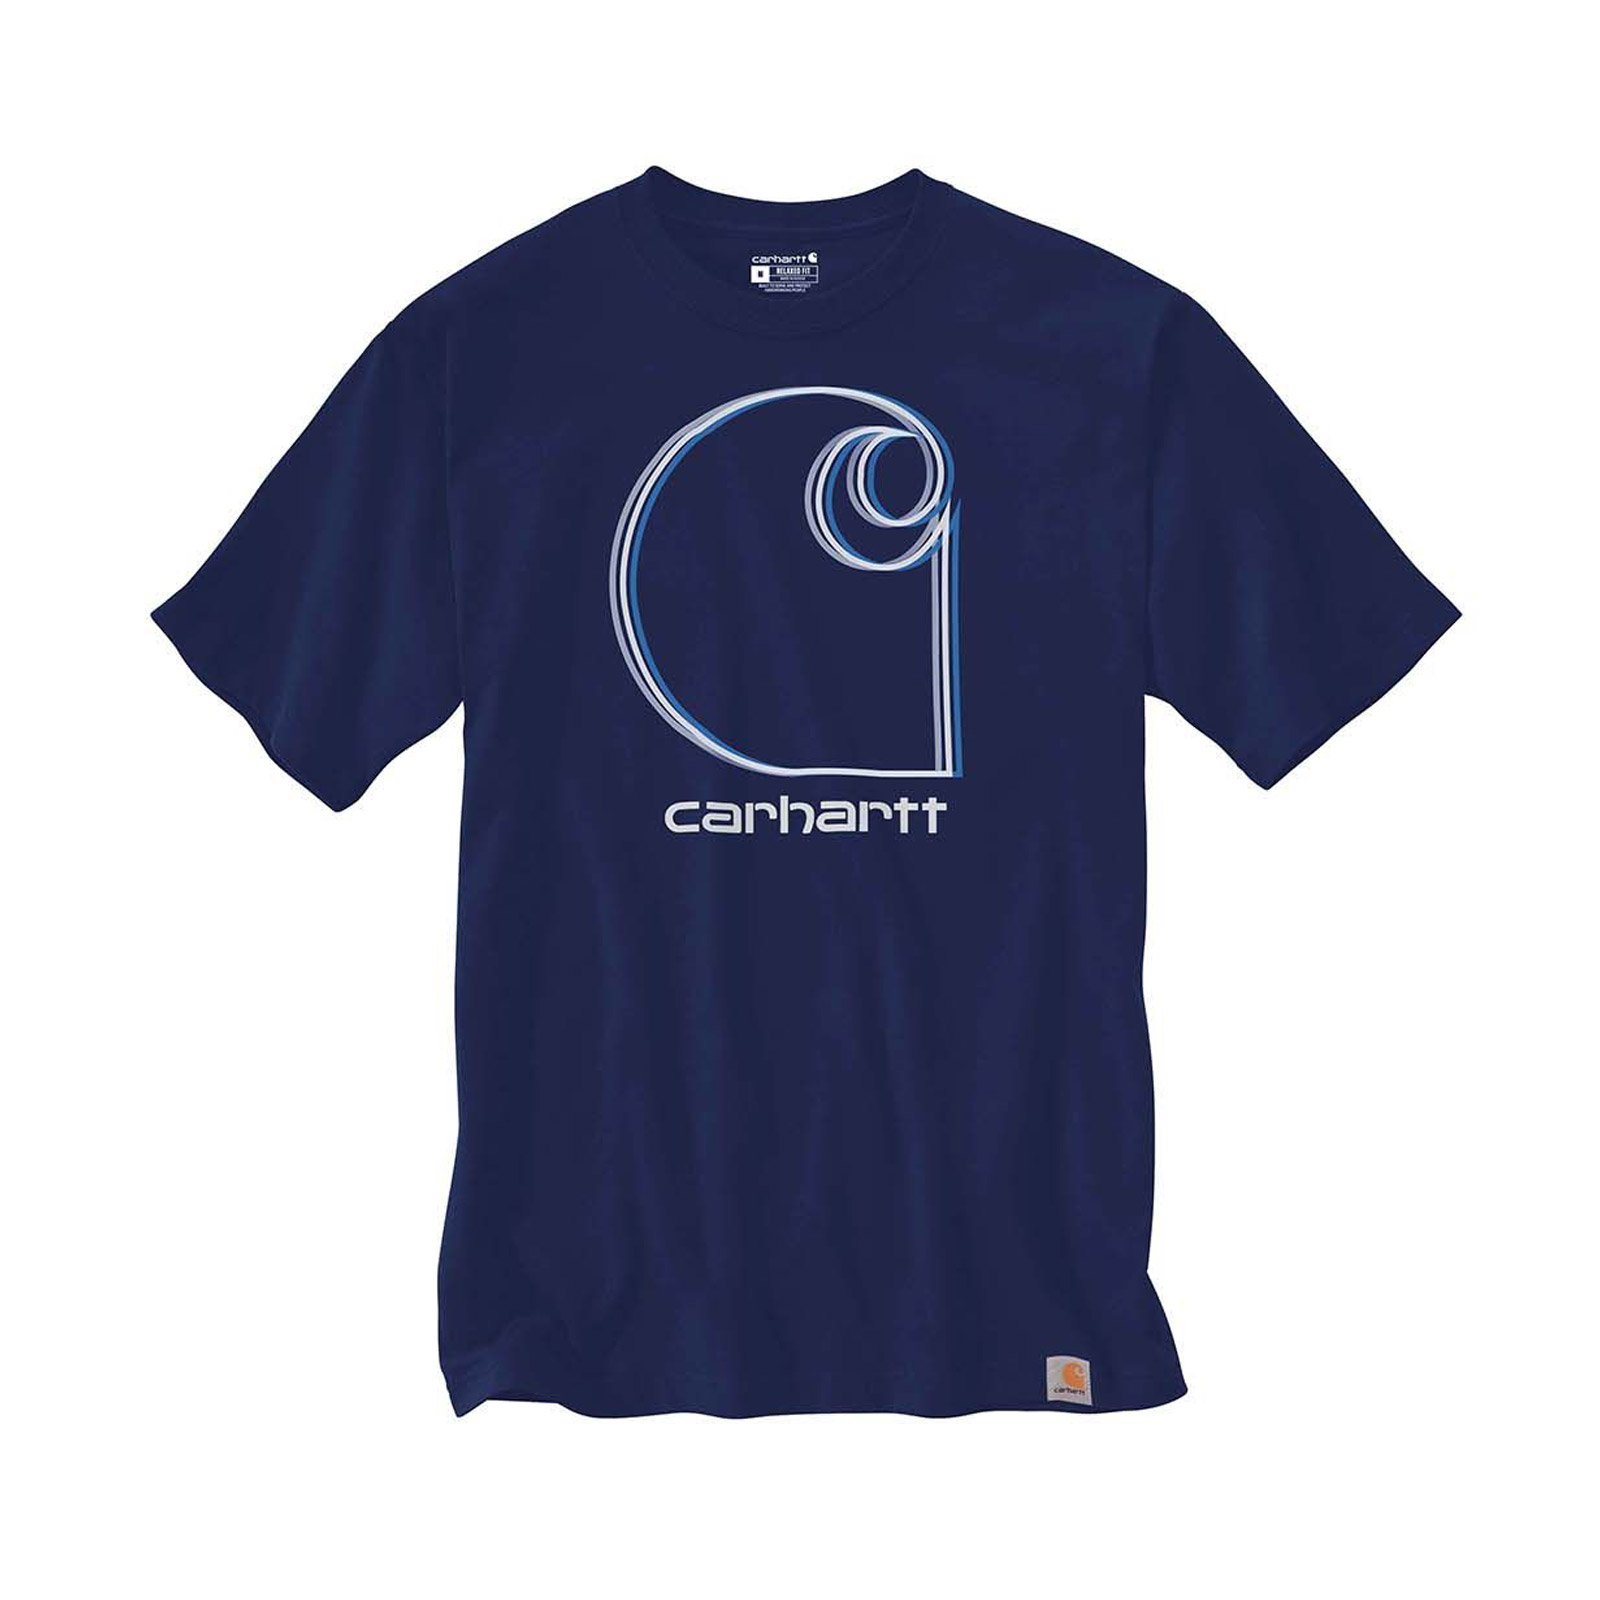 Carhartt C Graphic T-Shirt S/S Dunkelblau S